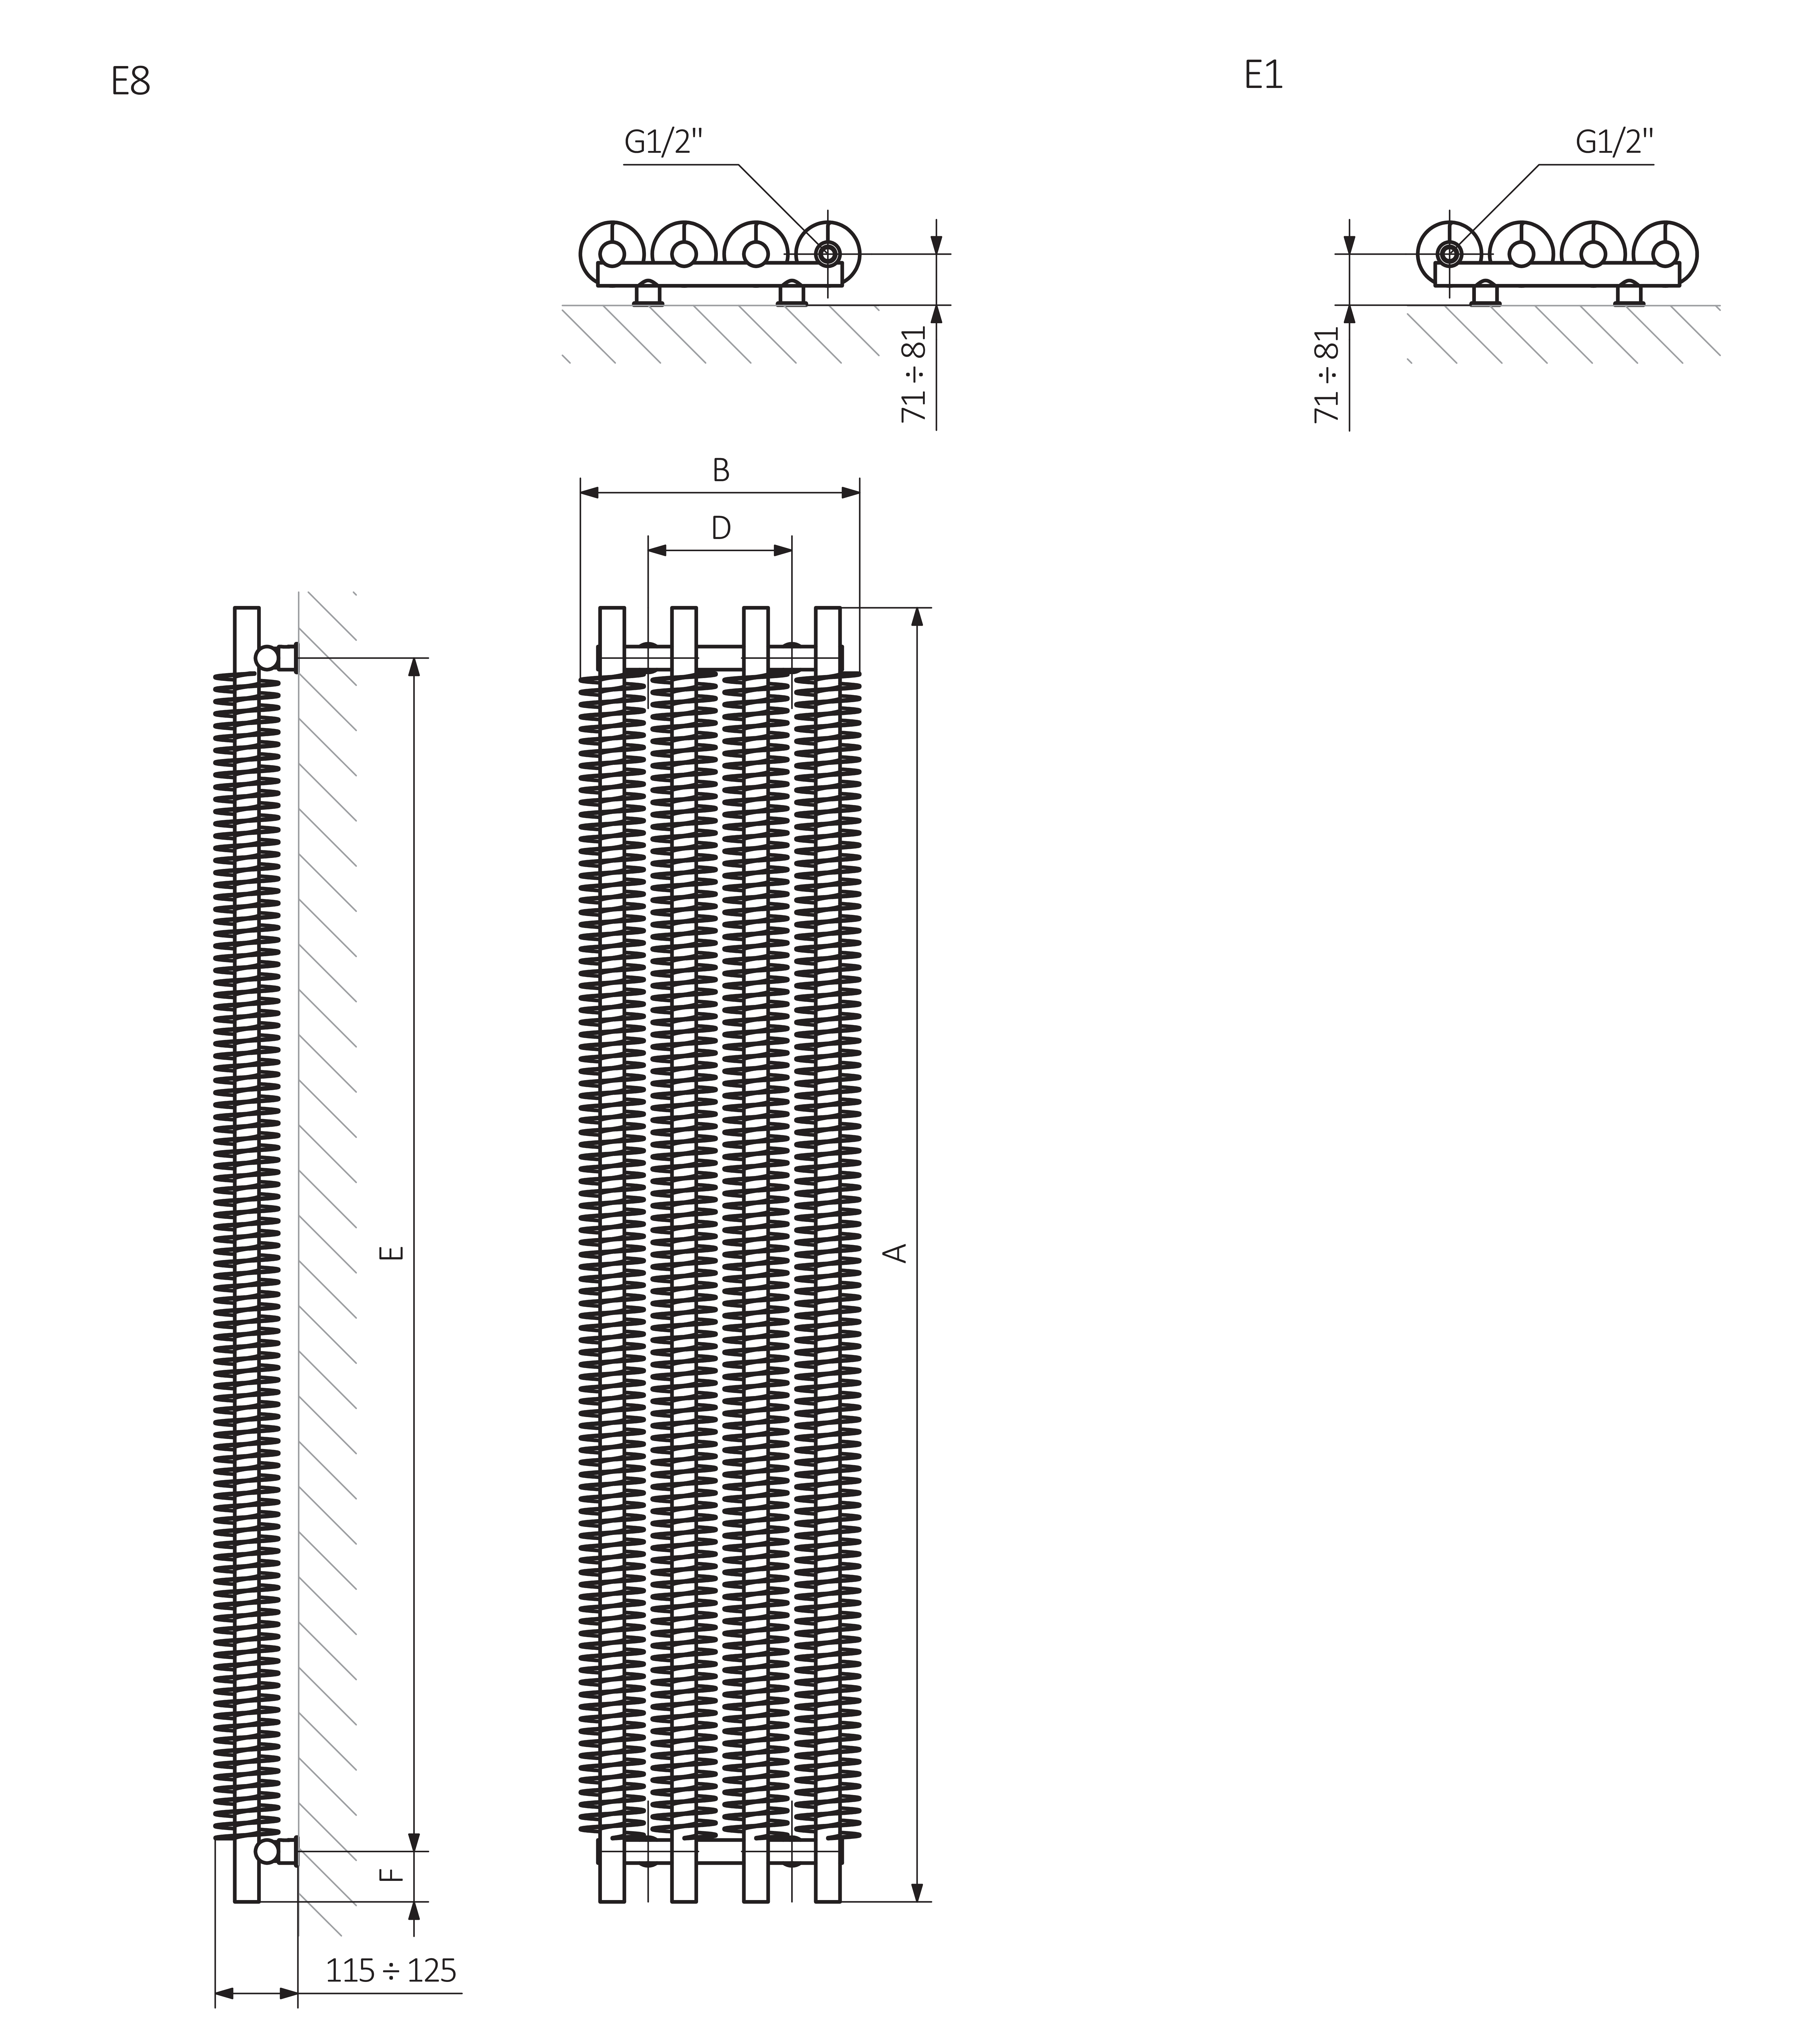 A - Höhe B - Breite C1-C5 - Abstand der Anschlüsse D - Abstand zwischen den Befestigungen in horizontalem E - Abstand zwischen den Befestigungen in vertikaler F - Abstand von der unteren Achse der Befestigungen zur unteren Kante des Kollektors
